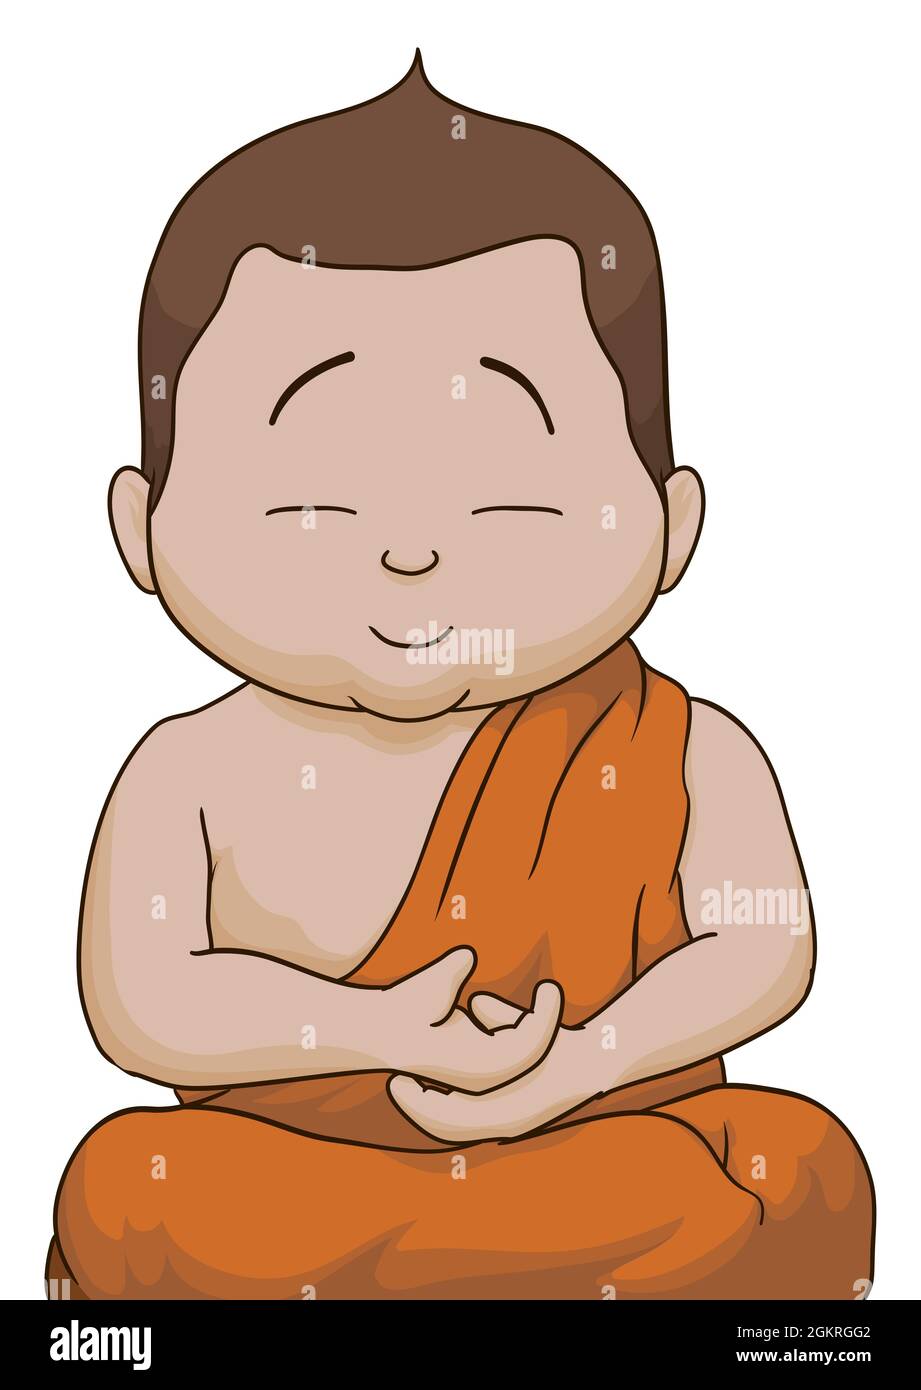 Porträt des Kindes Buddha, der mit geschlossenen Augen sitzt und meditiert und eine orangefarbene Kasaya trägt, auf weißem Hintergrund. Stock Vektor